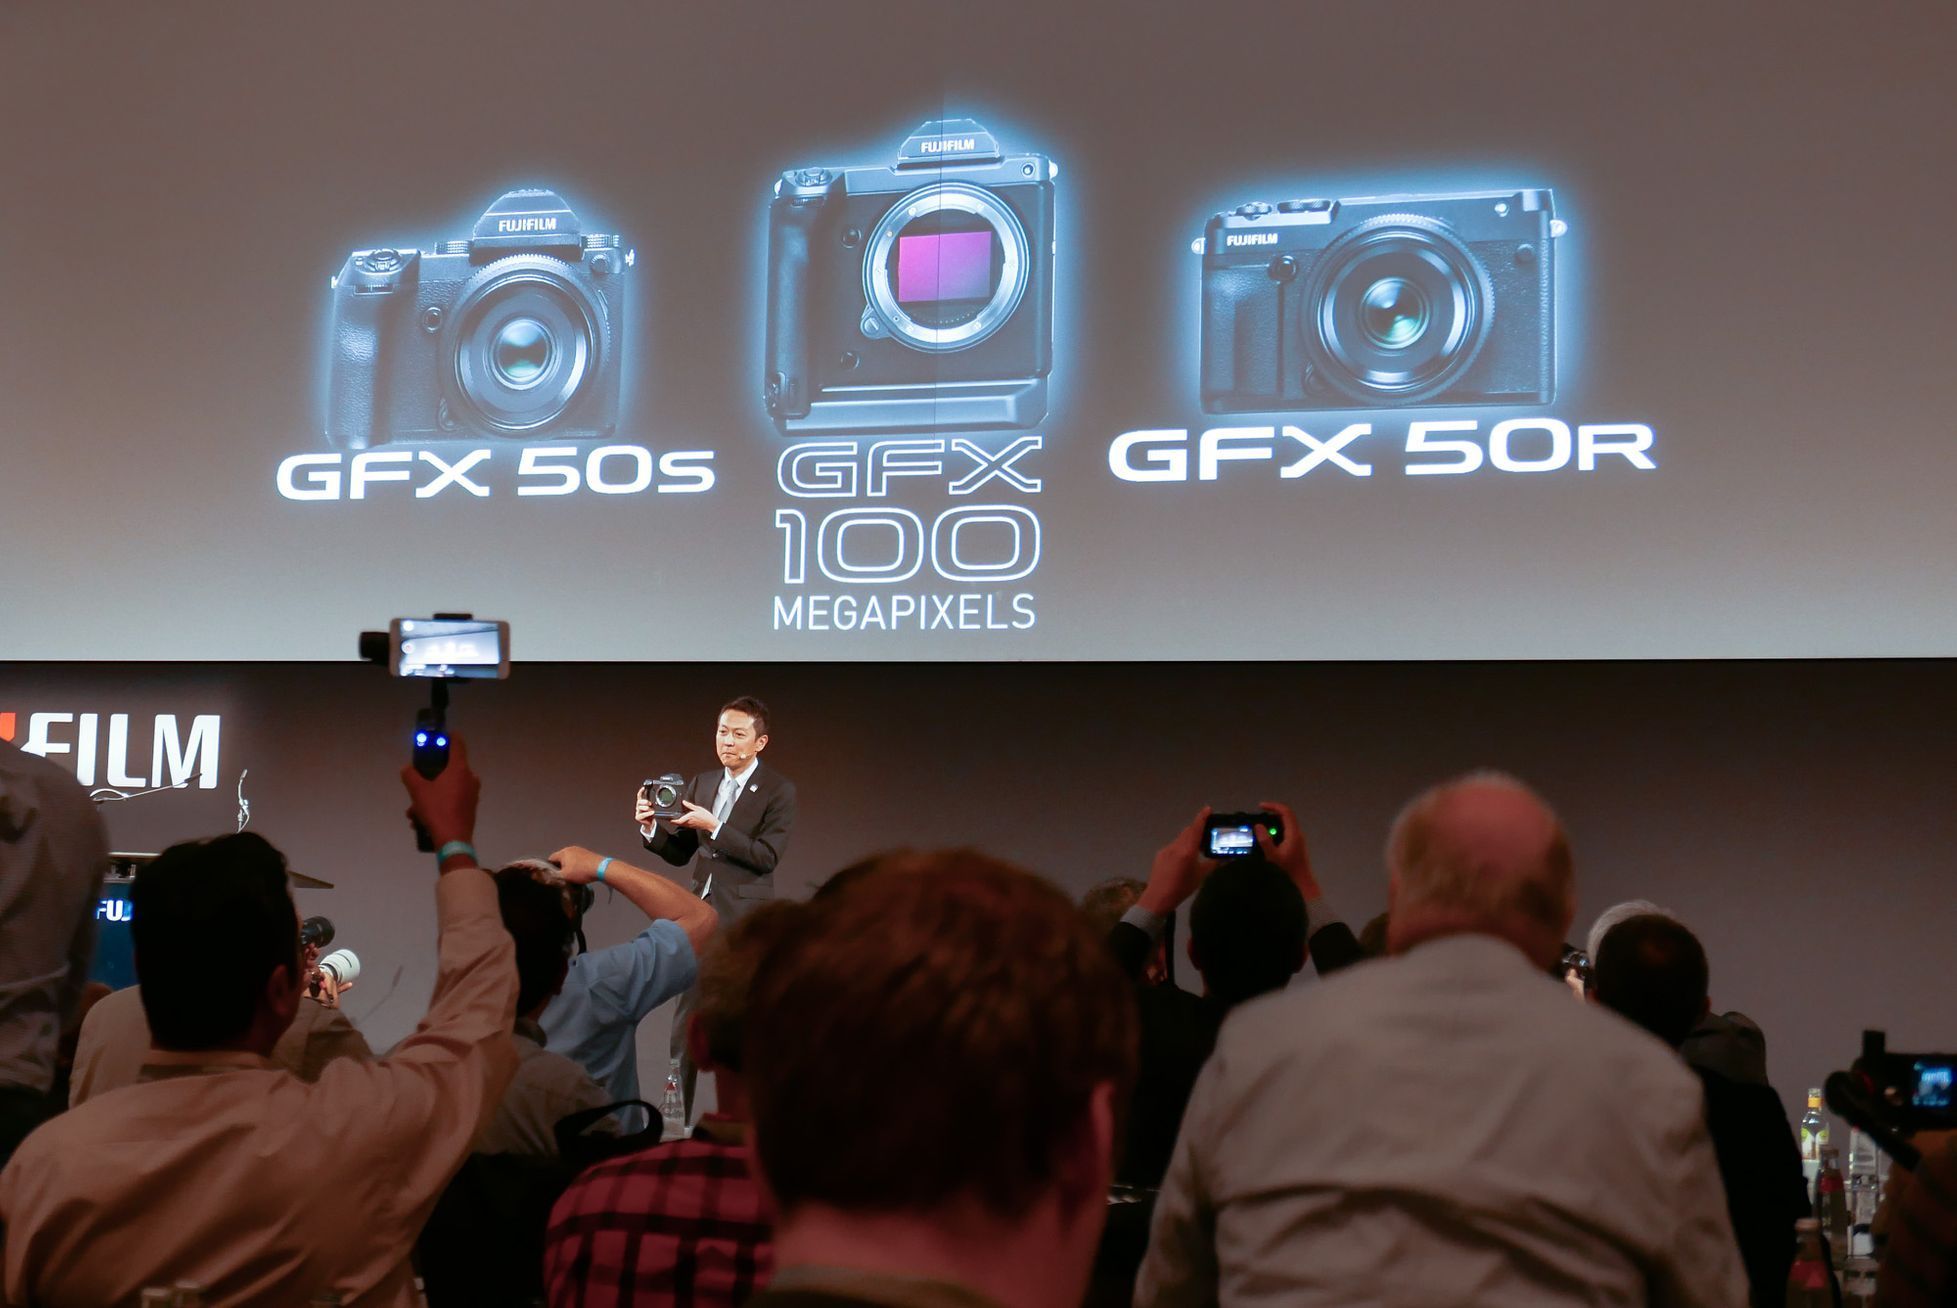 Nové fotoaparáty od Fujifilmu (GFX 50R a koncept GFX100). Model GFX50s byl představen na Photokině 2016.